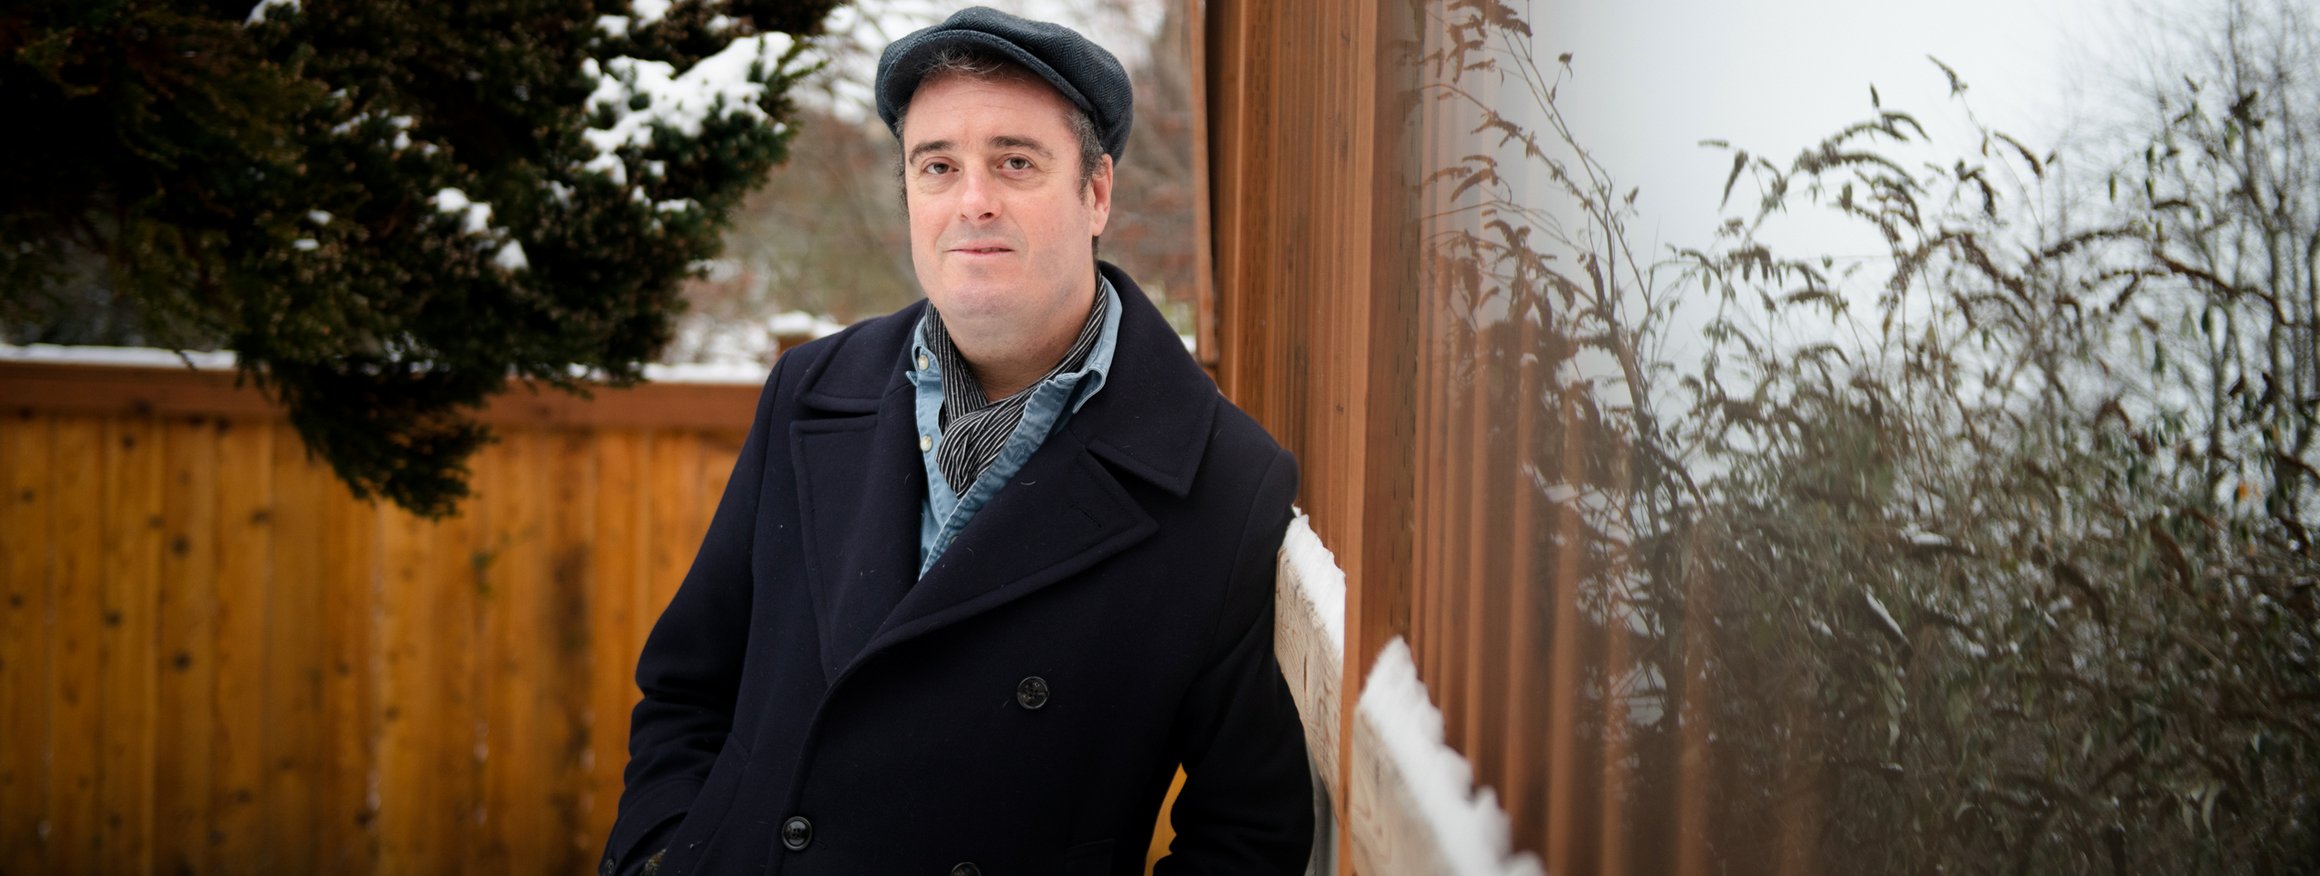 Der britische Psychologe Tim Lomas steht mit Mützen und Winterjacke auf einem Balkon, hinter ihm ein  schneebedeckter Garten mit Baum